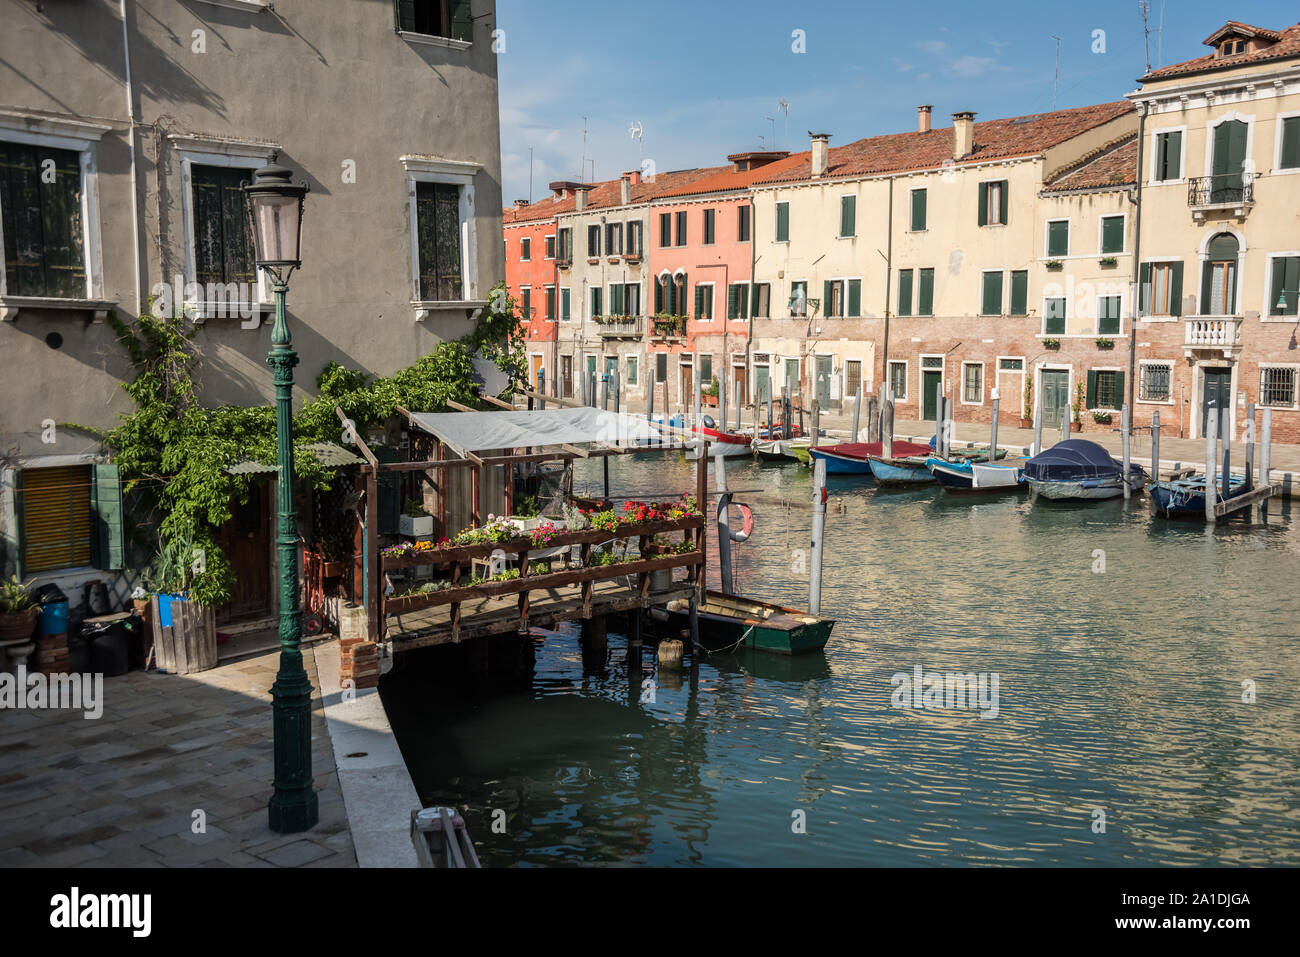 Venedig, Stadtteil Giudecca - Venice, Giudecca Quarter Stock Photo